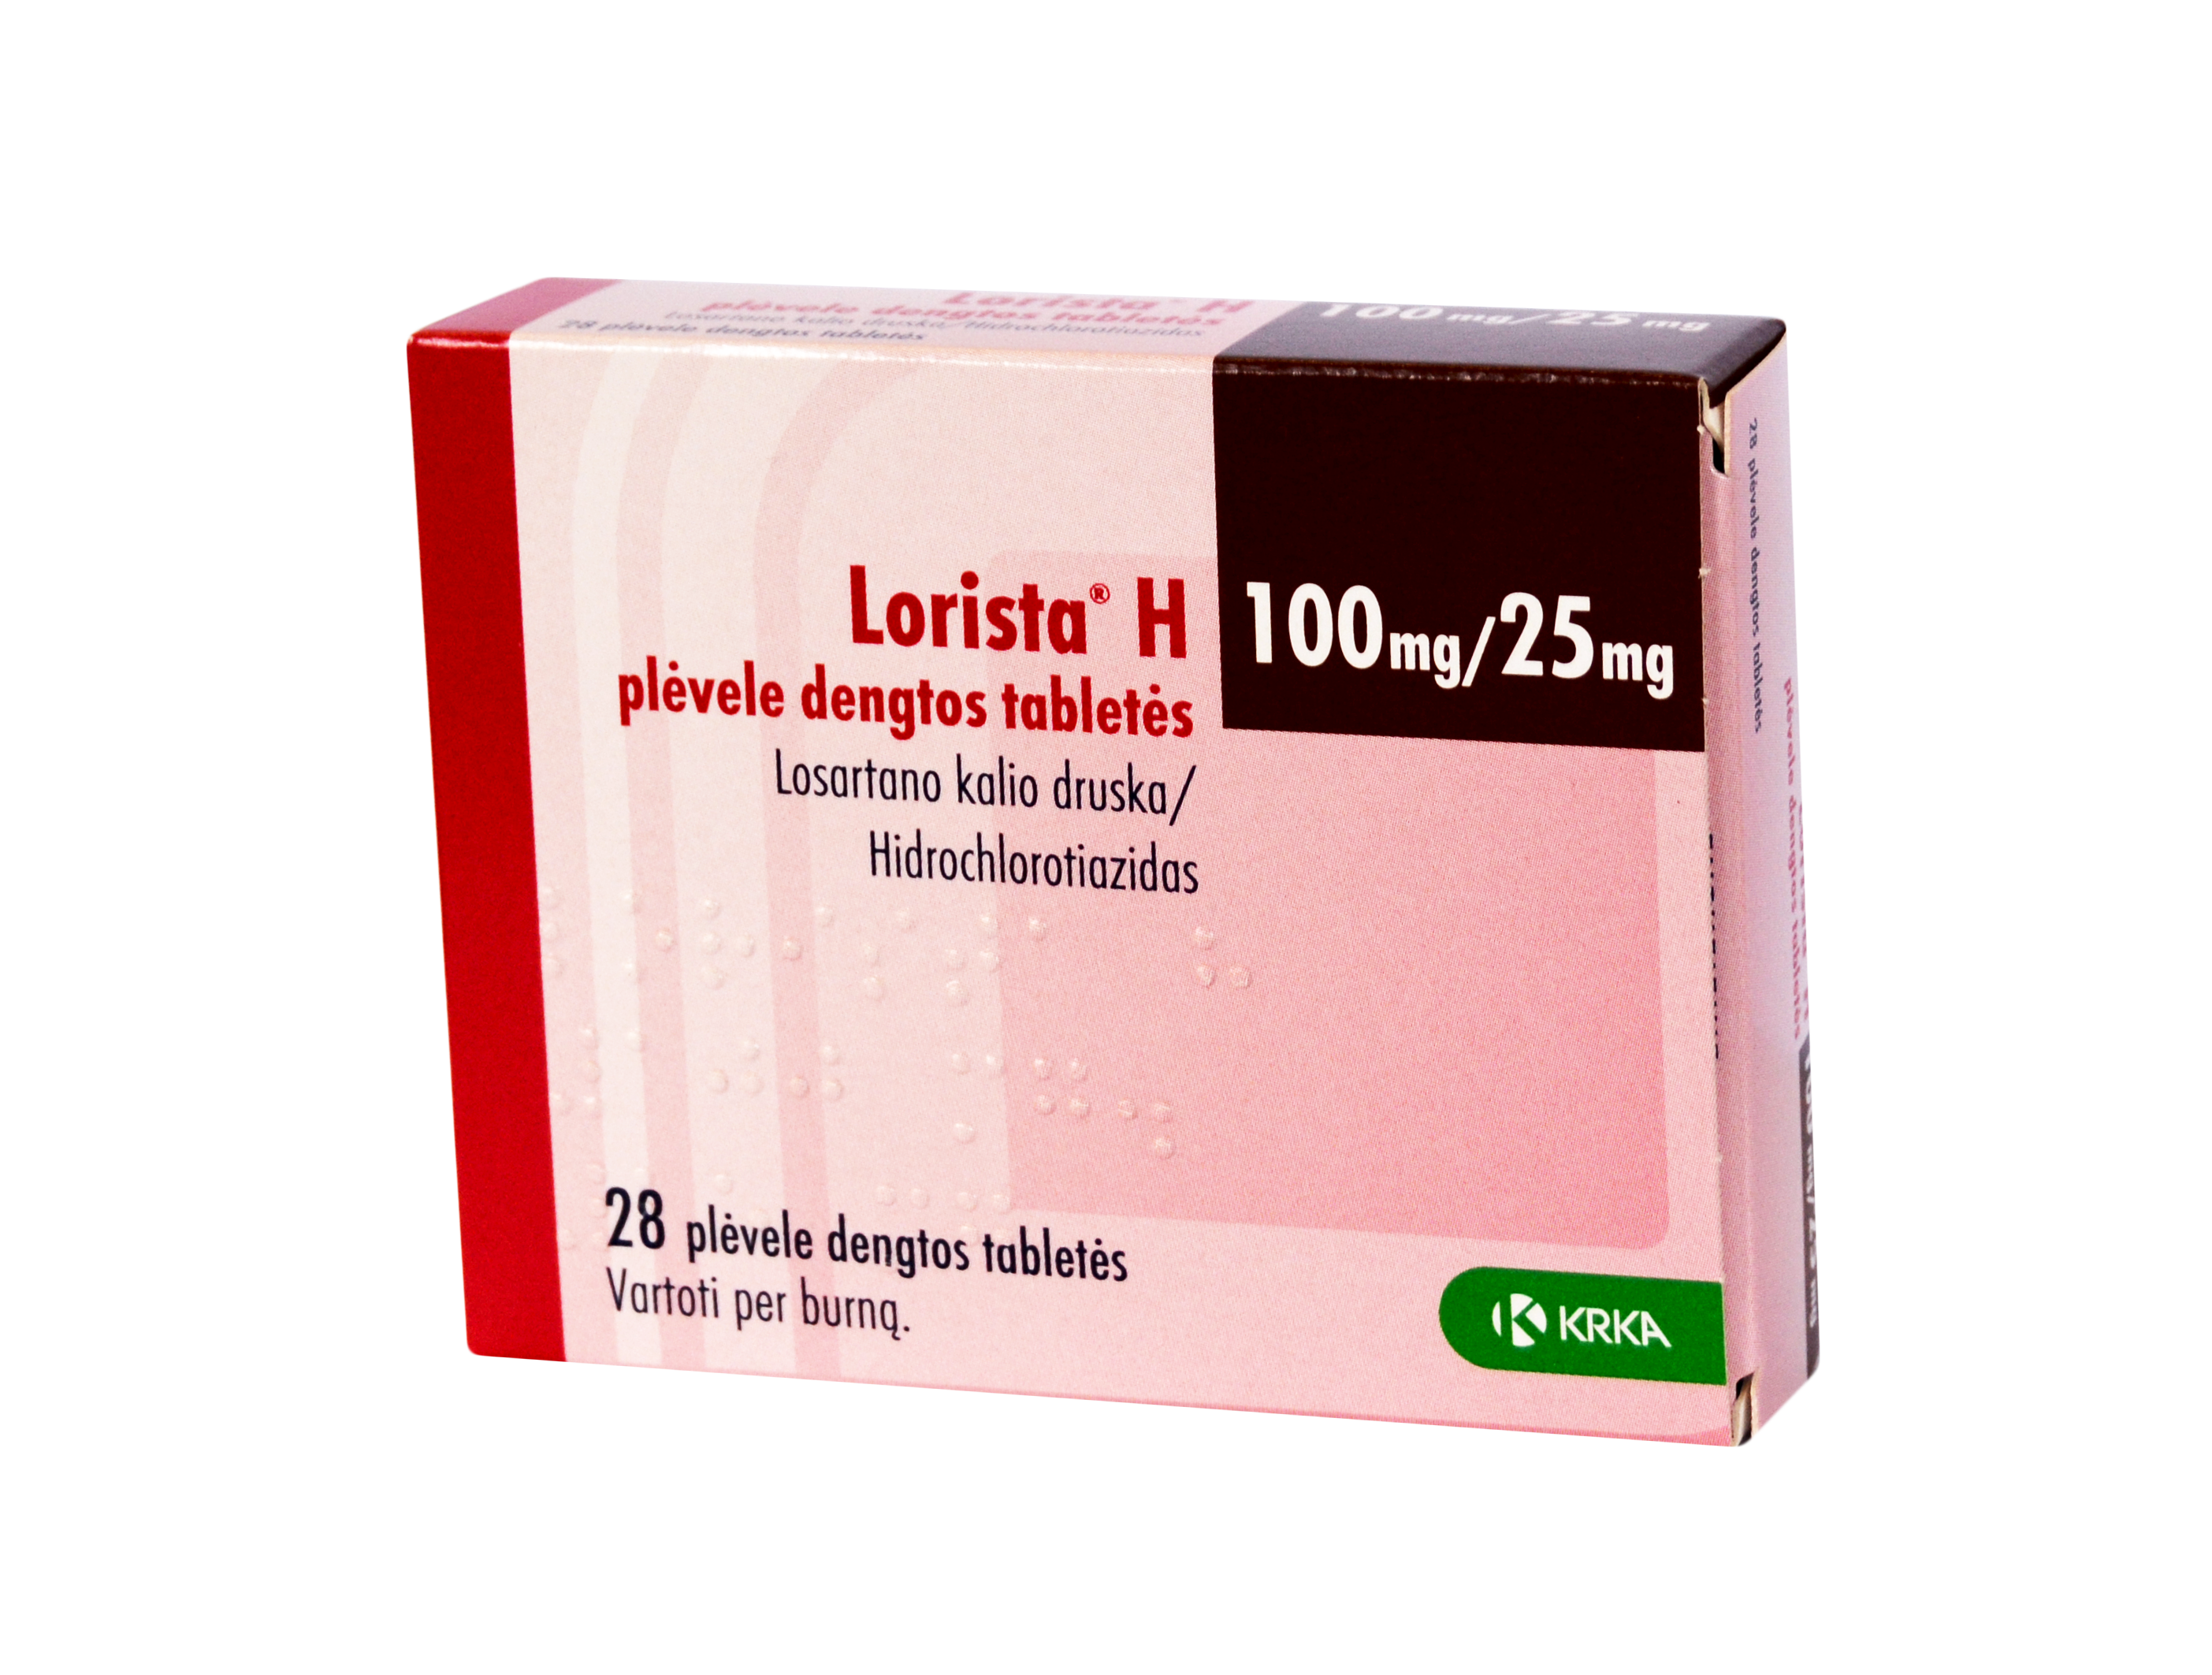 lorista vaistas nuo hipertenzijos